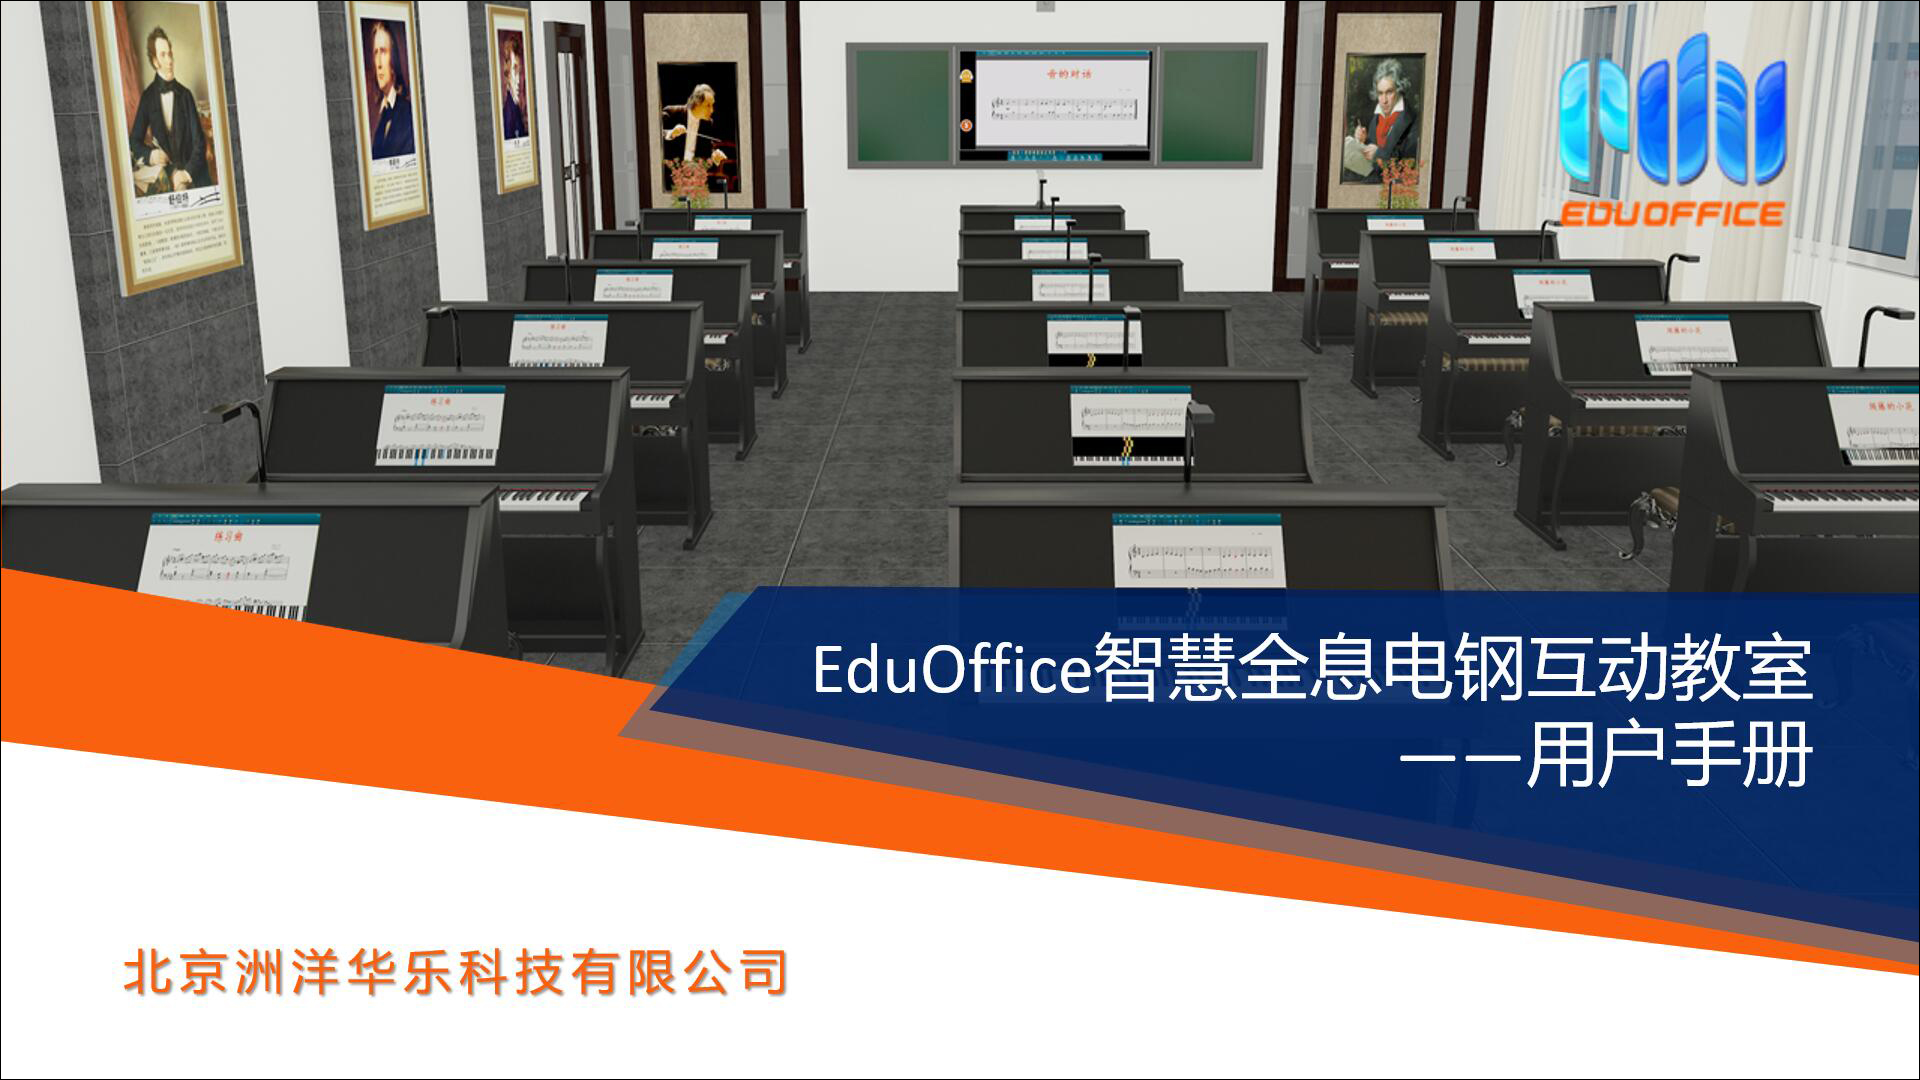 EduOffice智慧全息电钢互动教室-使用手册